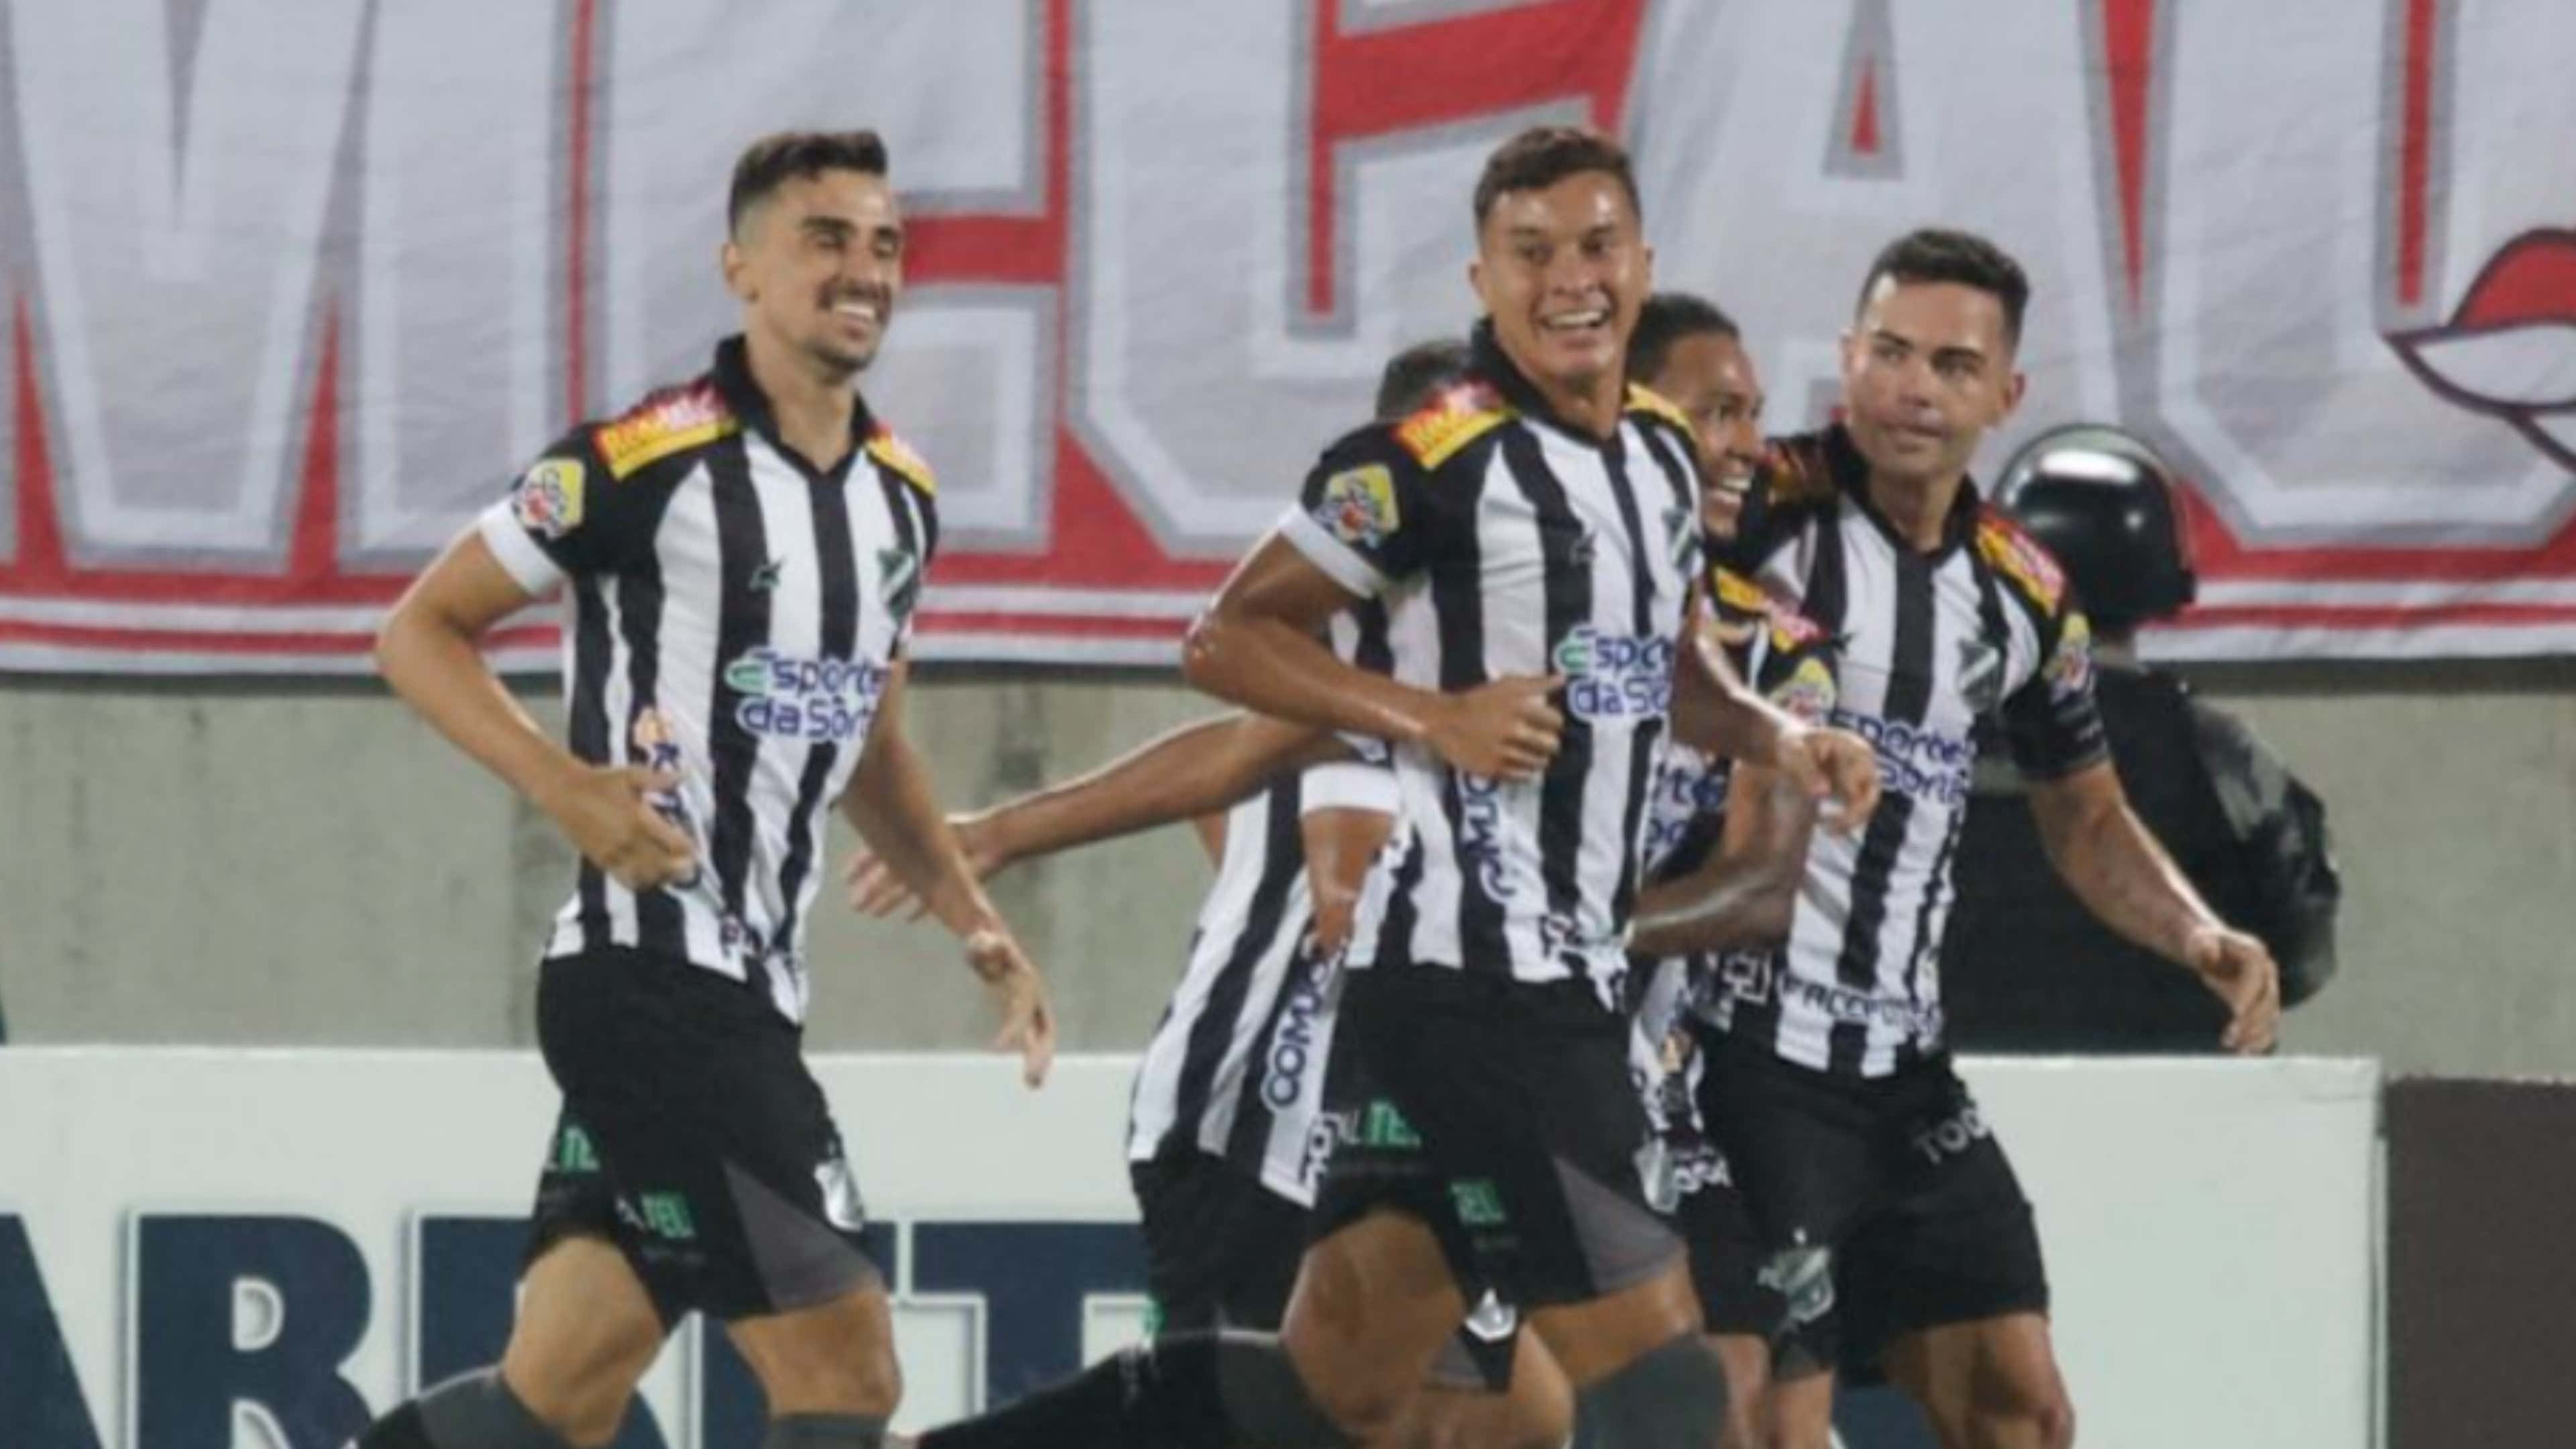 Brasilerão Série B: prováveis escalações de Botafogo-SP e ABC